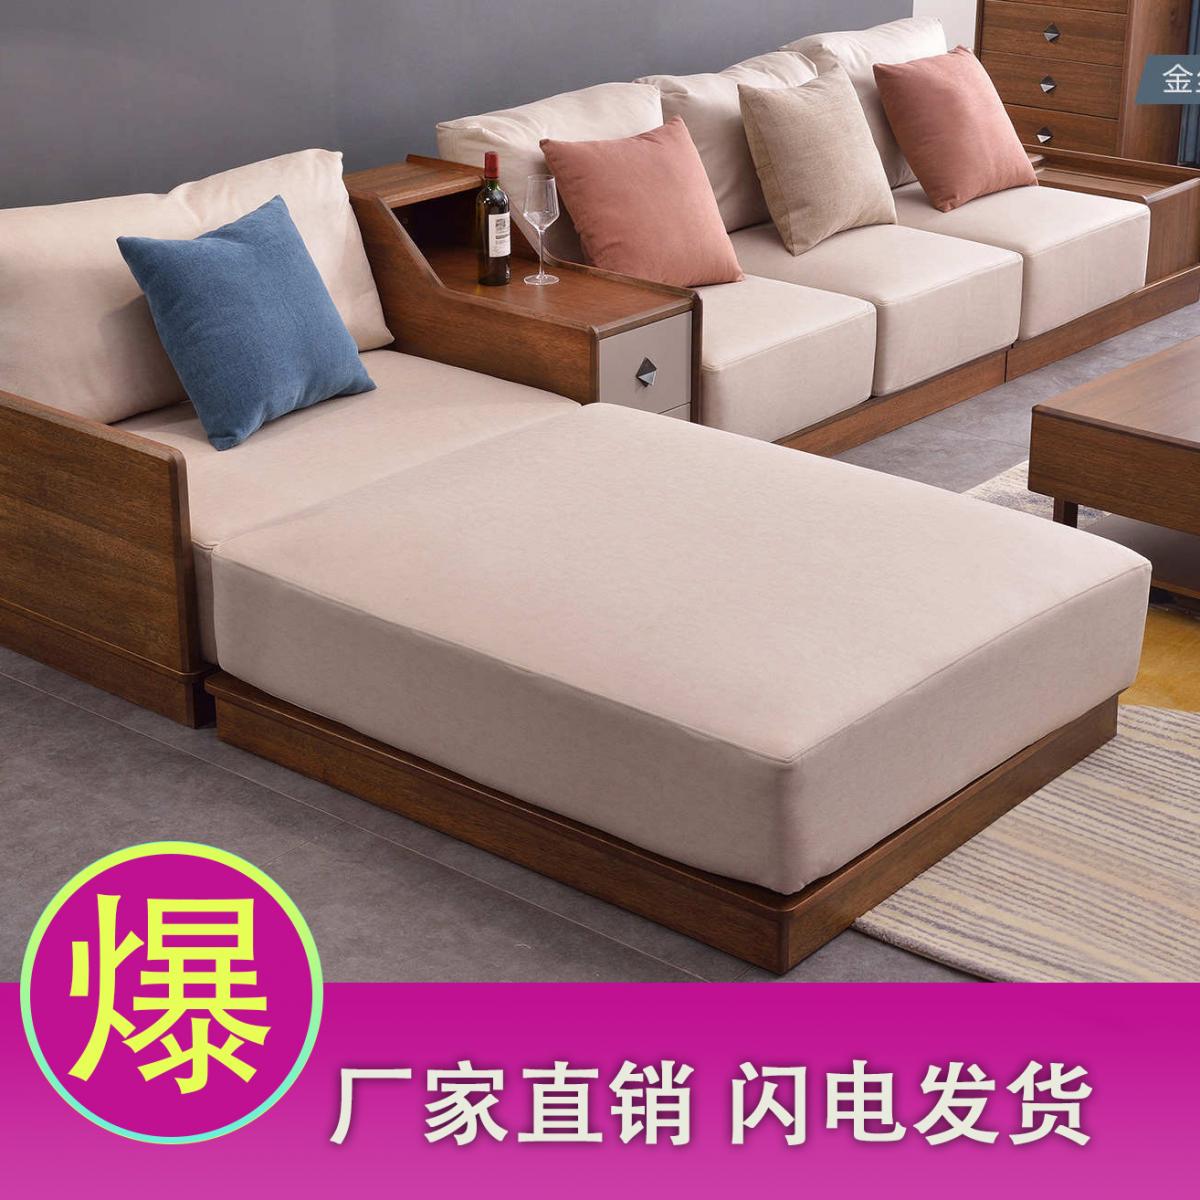 新中式胡桃木沙发组合现代简约带储物客厅布艺沙发小户型家具套装